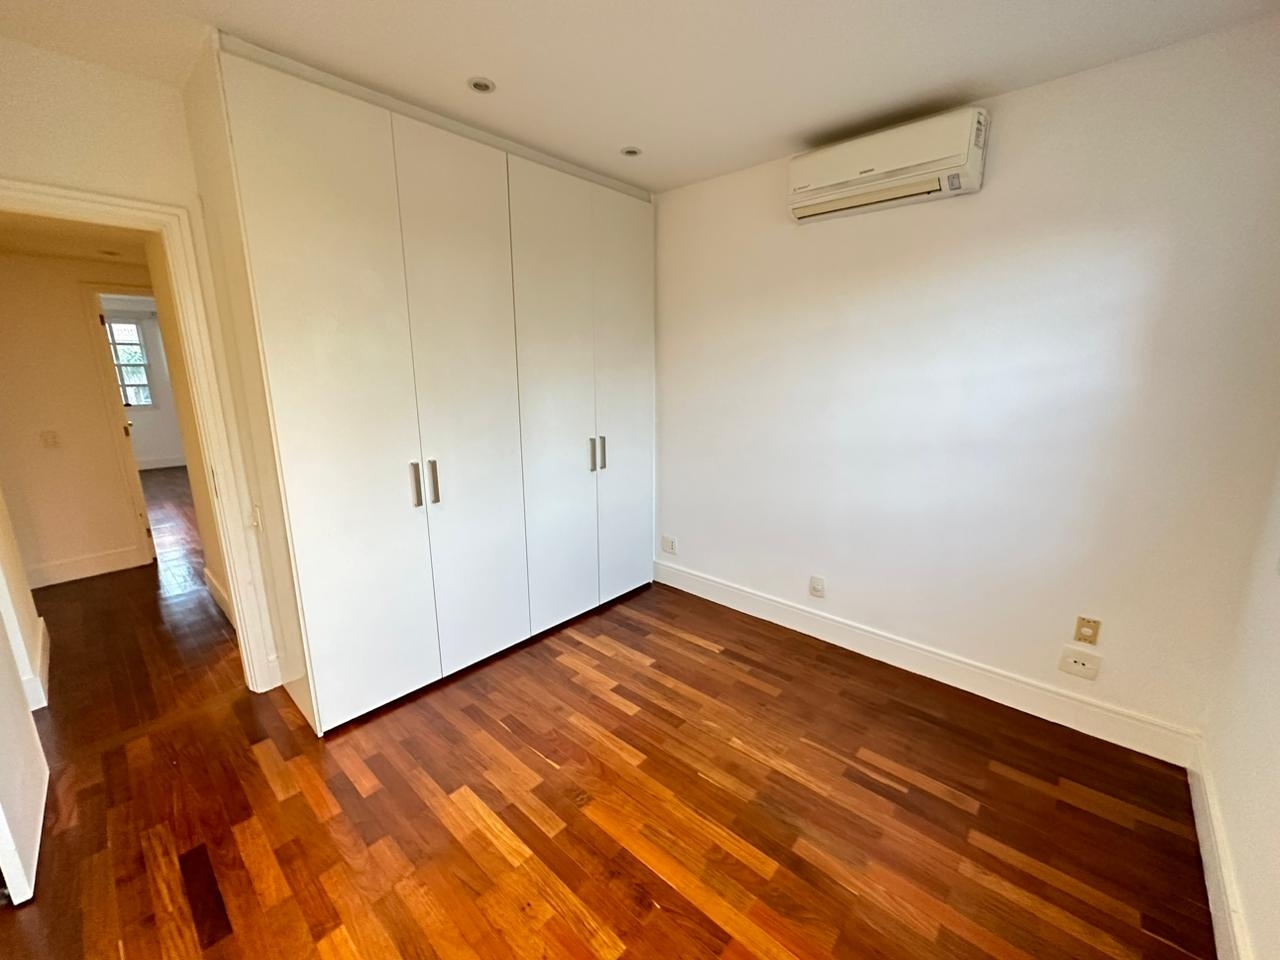 Apartamento no Condomínio Ocean Front 110m2 - Av. Lúcio Costa - Barra da Tijuca